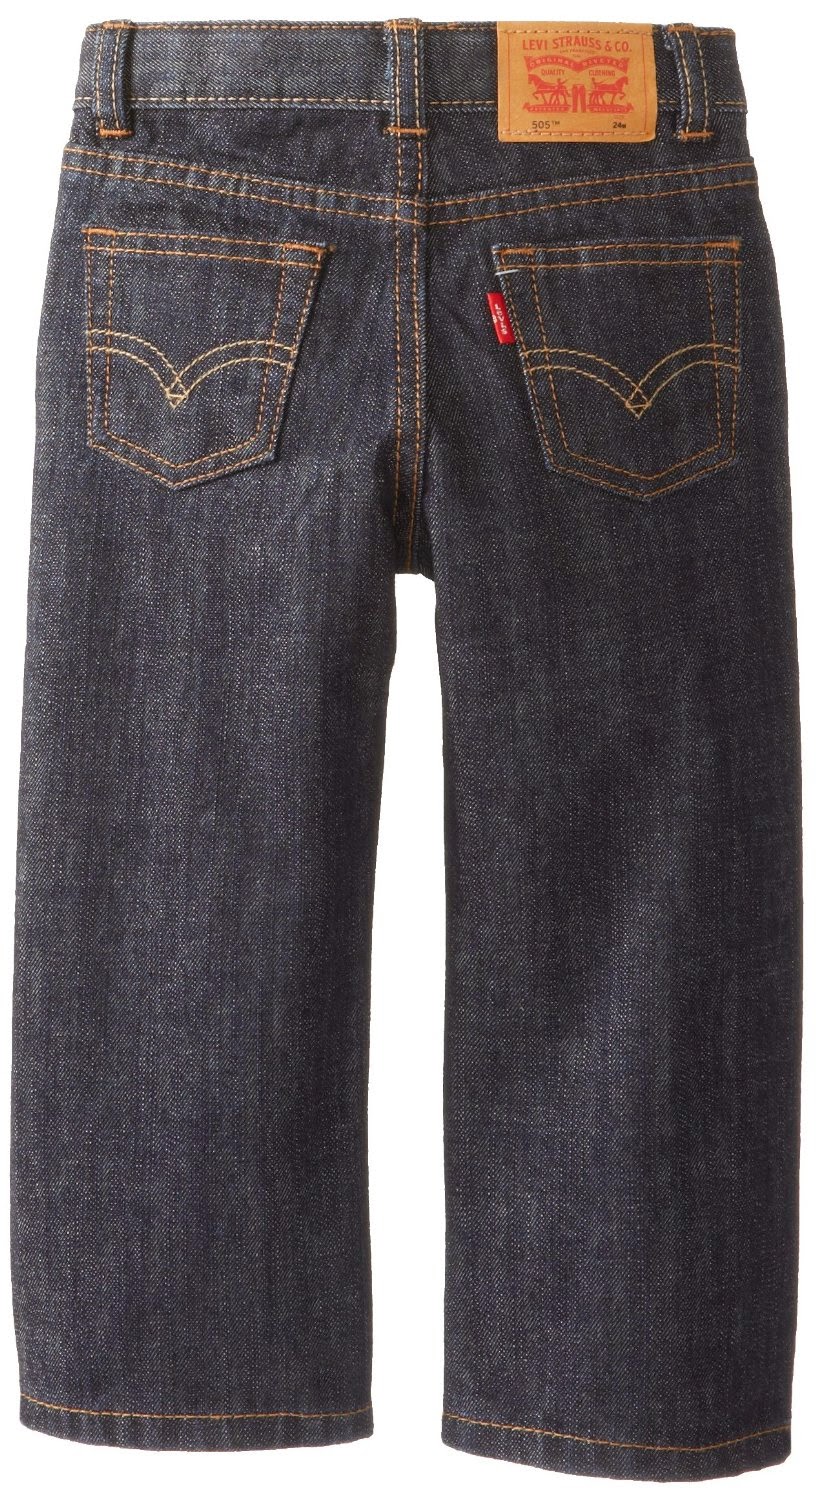 Rays Little Celana  Jeans LEVI S  Untuk Bayi Laki Laki Di 